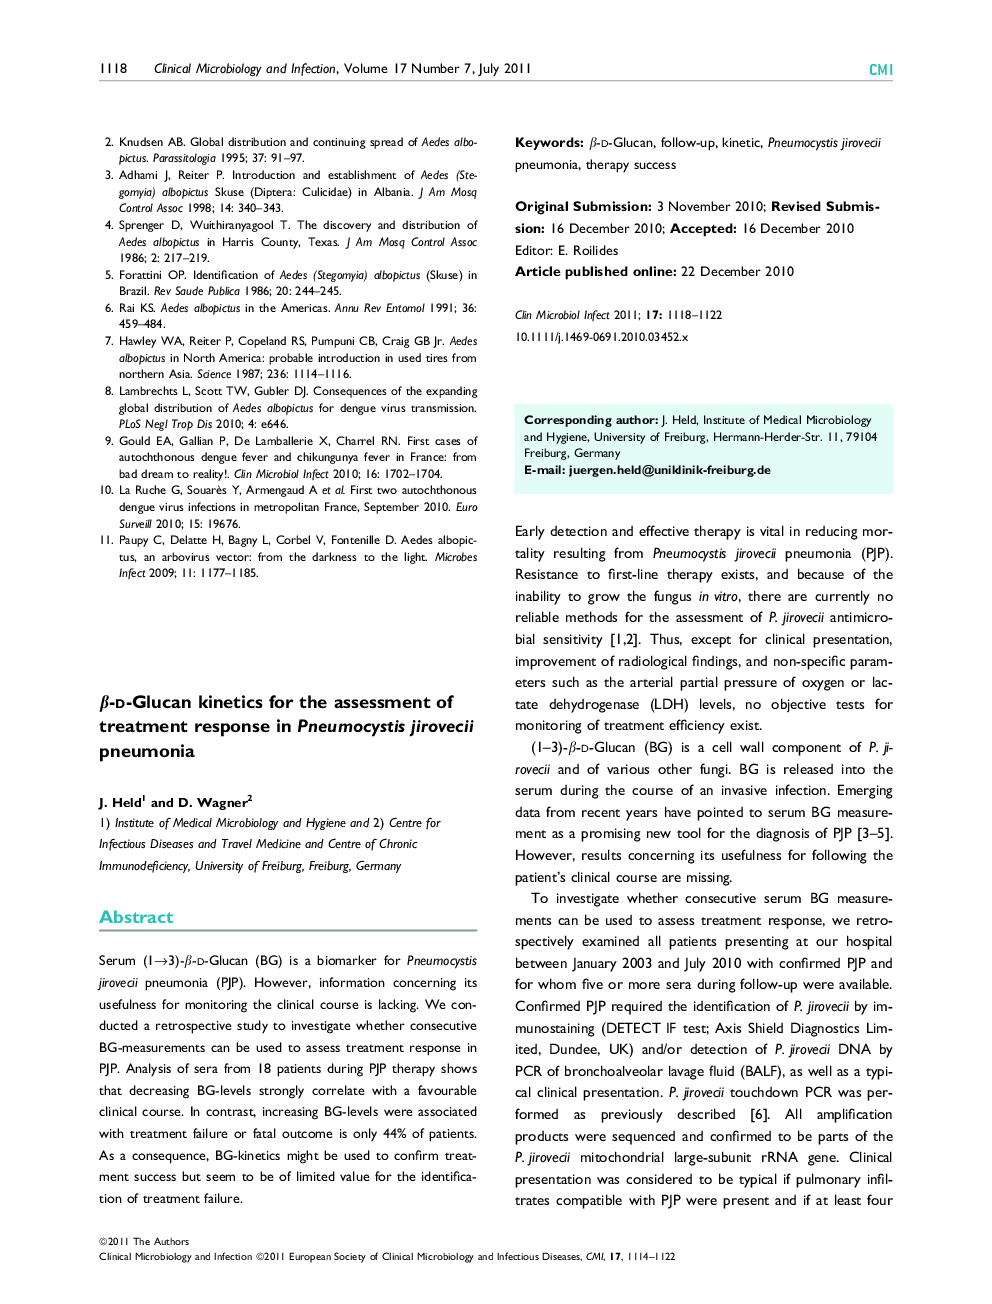 β-d-Glucan kinetics for the assessment of treatment response in Pneumocystis jirovecii pneumonia 